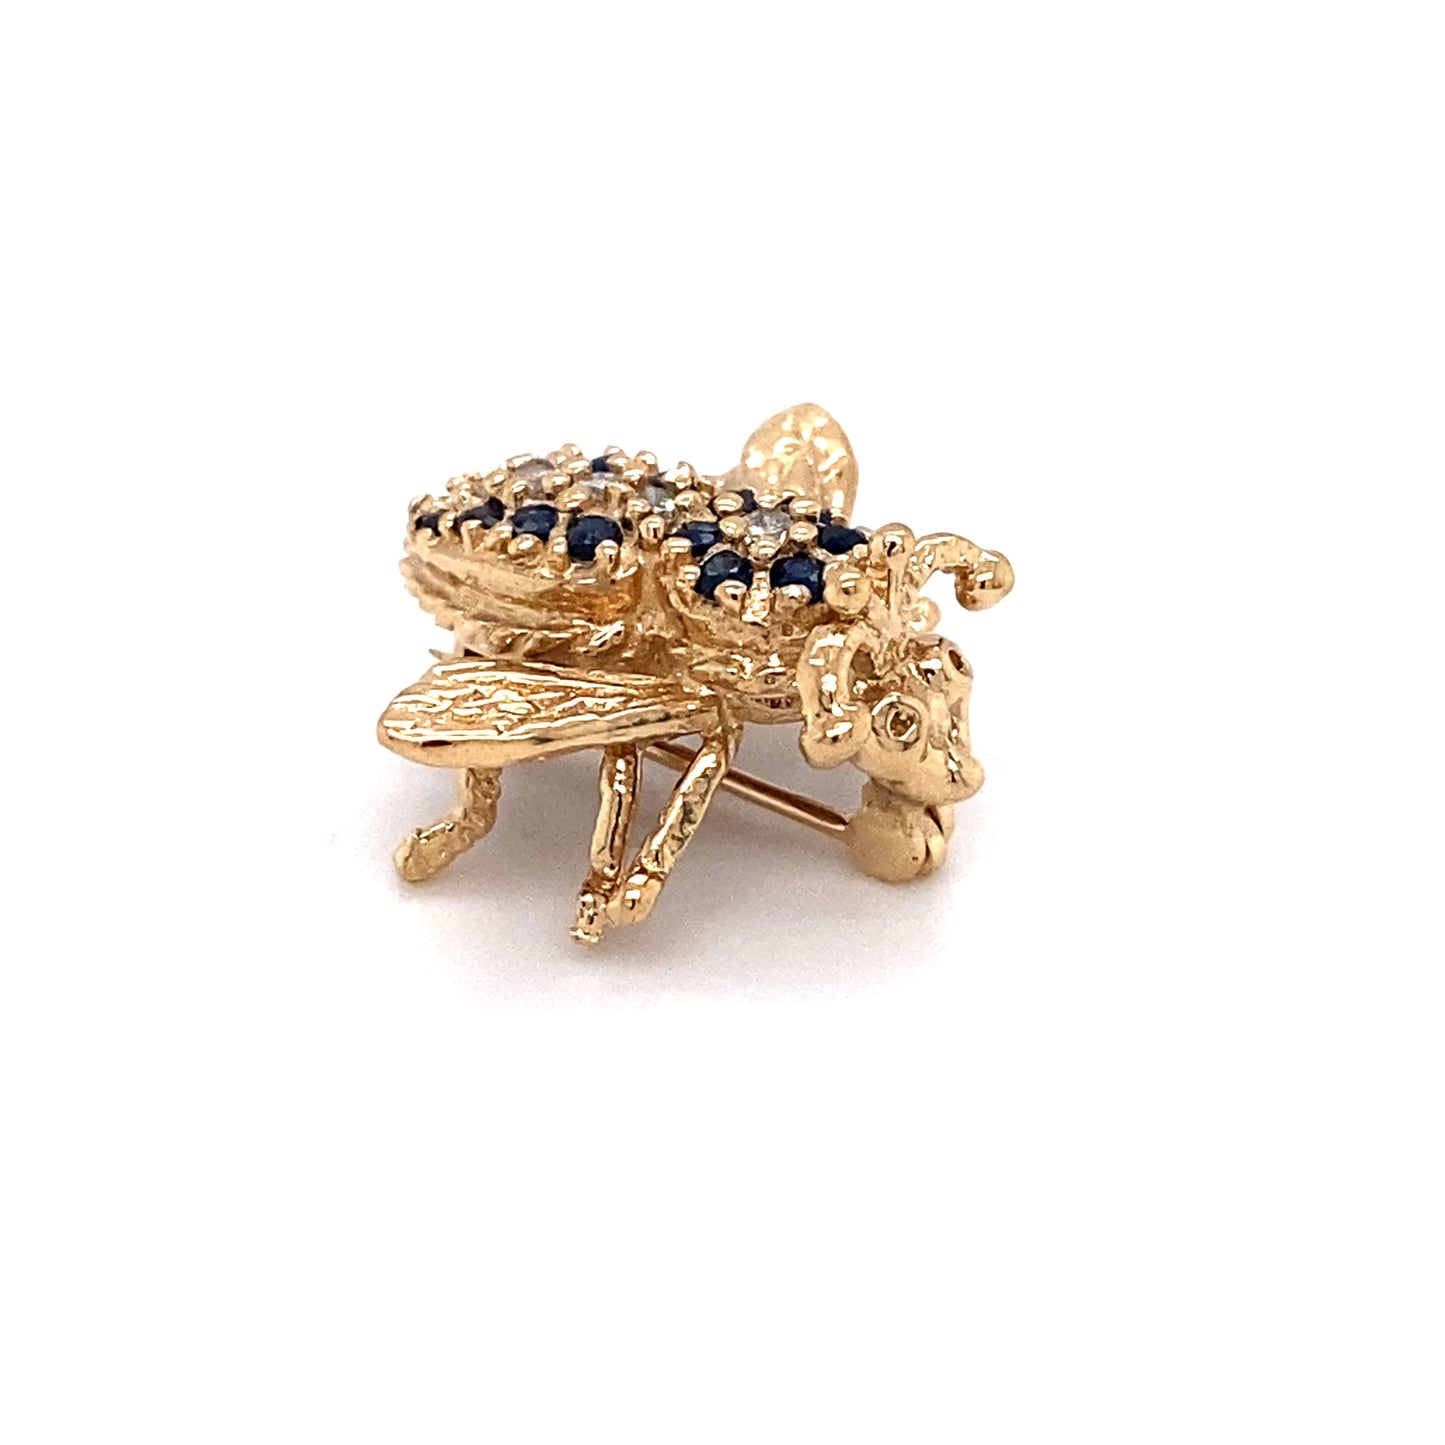 Circa 1980 Sapphire and Diamond Bee Pin in 14 Karat Gold